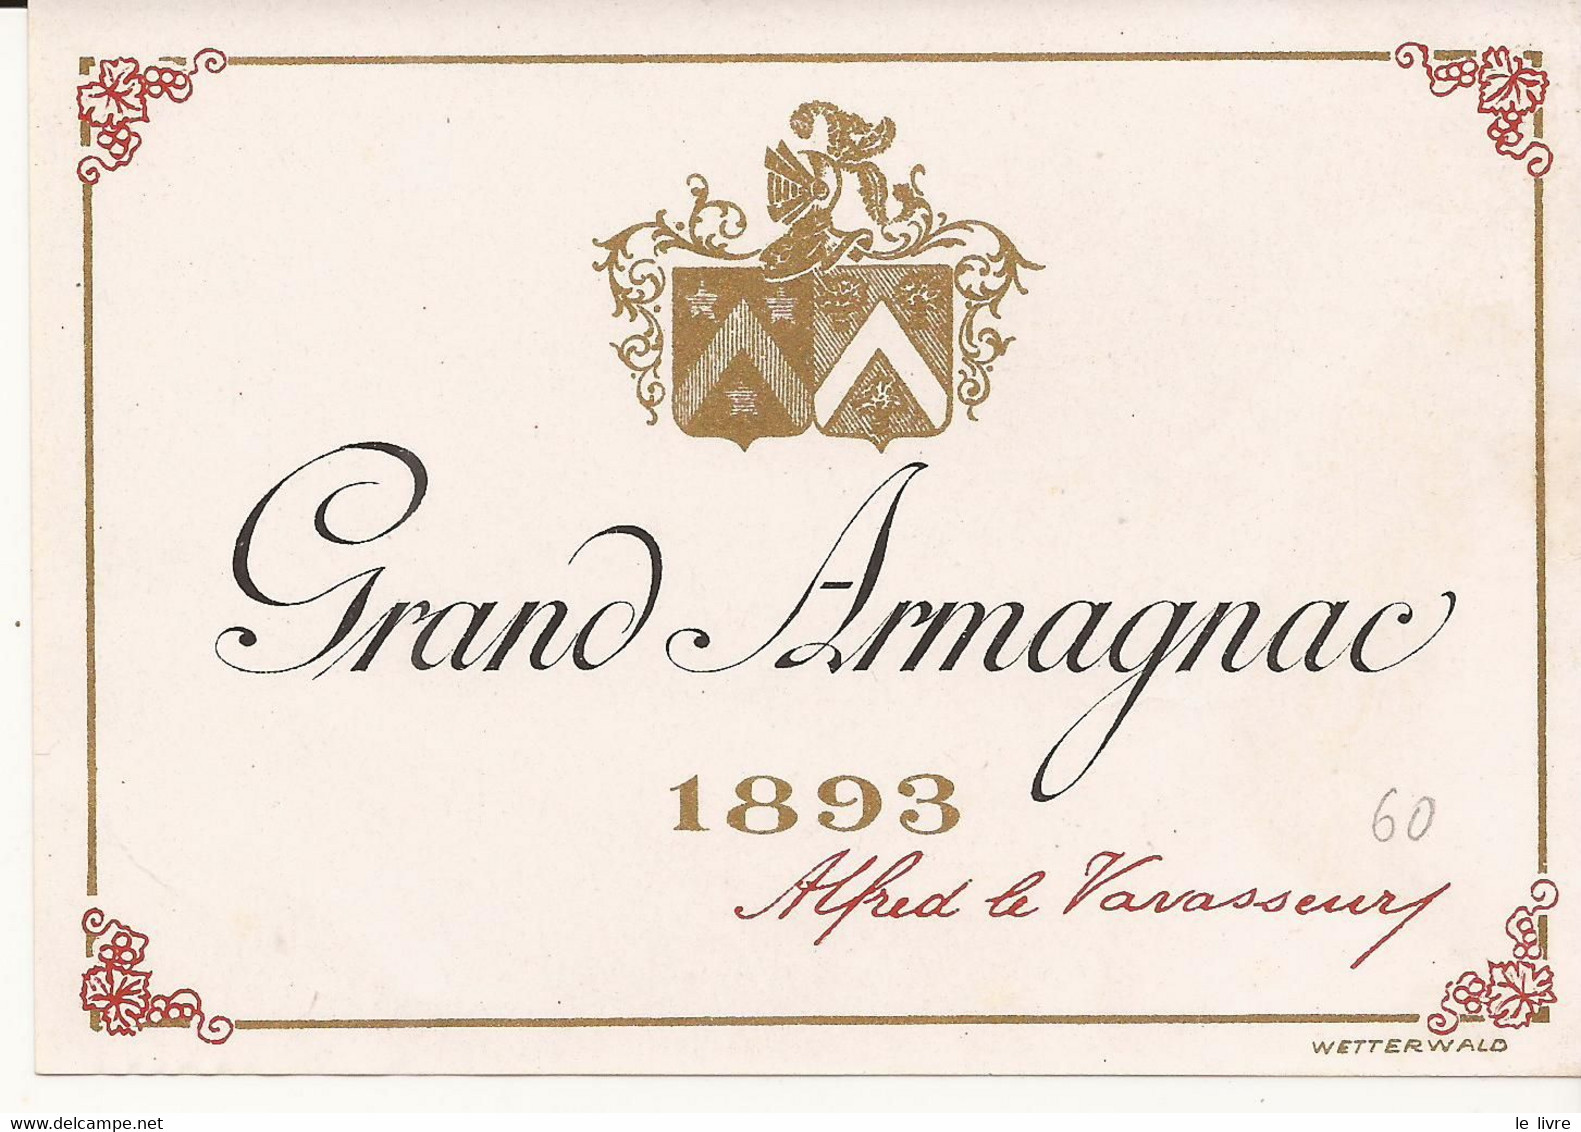 ETIQUETTE ANCIENNE GRAND ARMAGNAC 1893 ALFRED LE VAVASSEUR